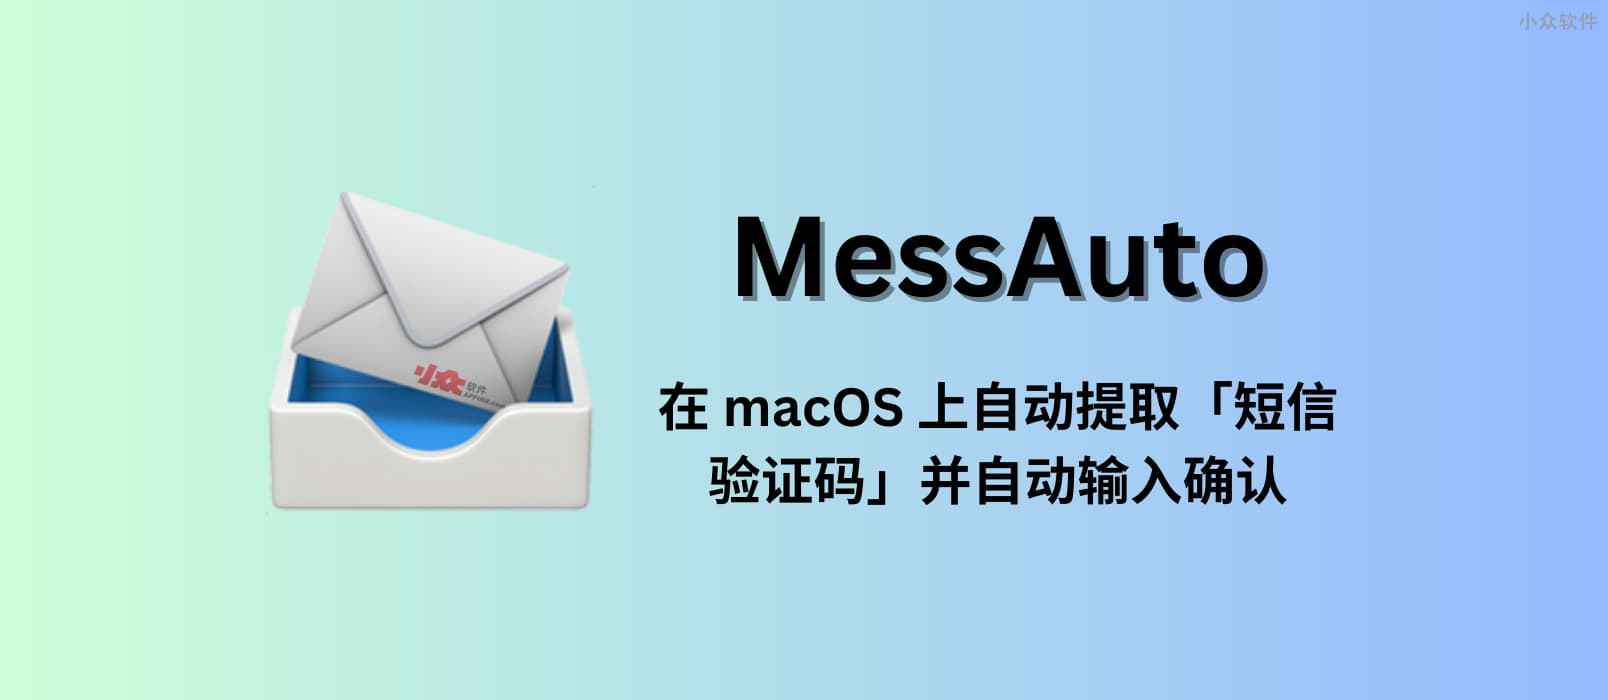 MessAuto – 在 macOS 上自动提取「短信验证码」并自动输入的工具